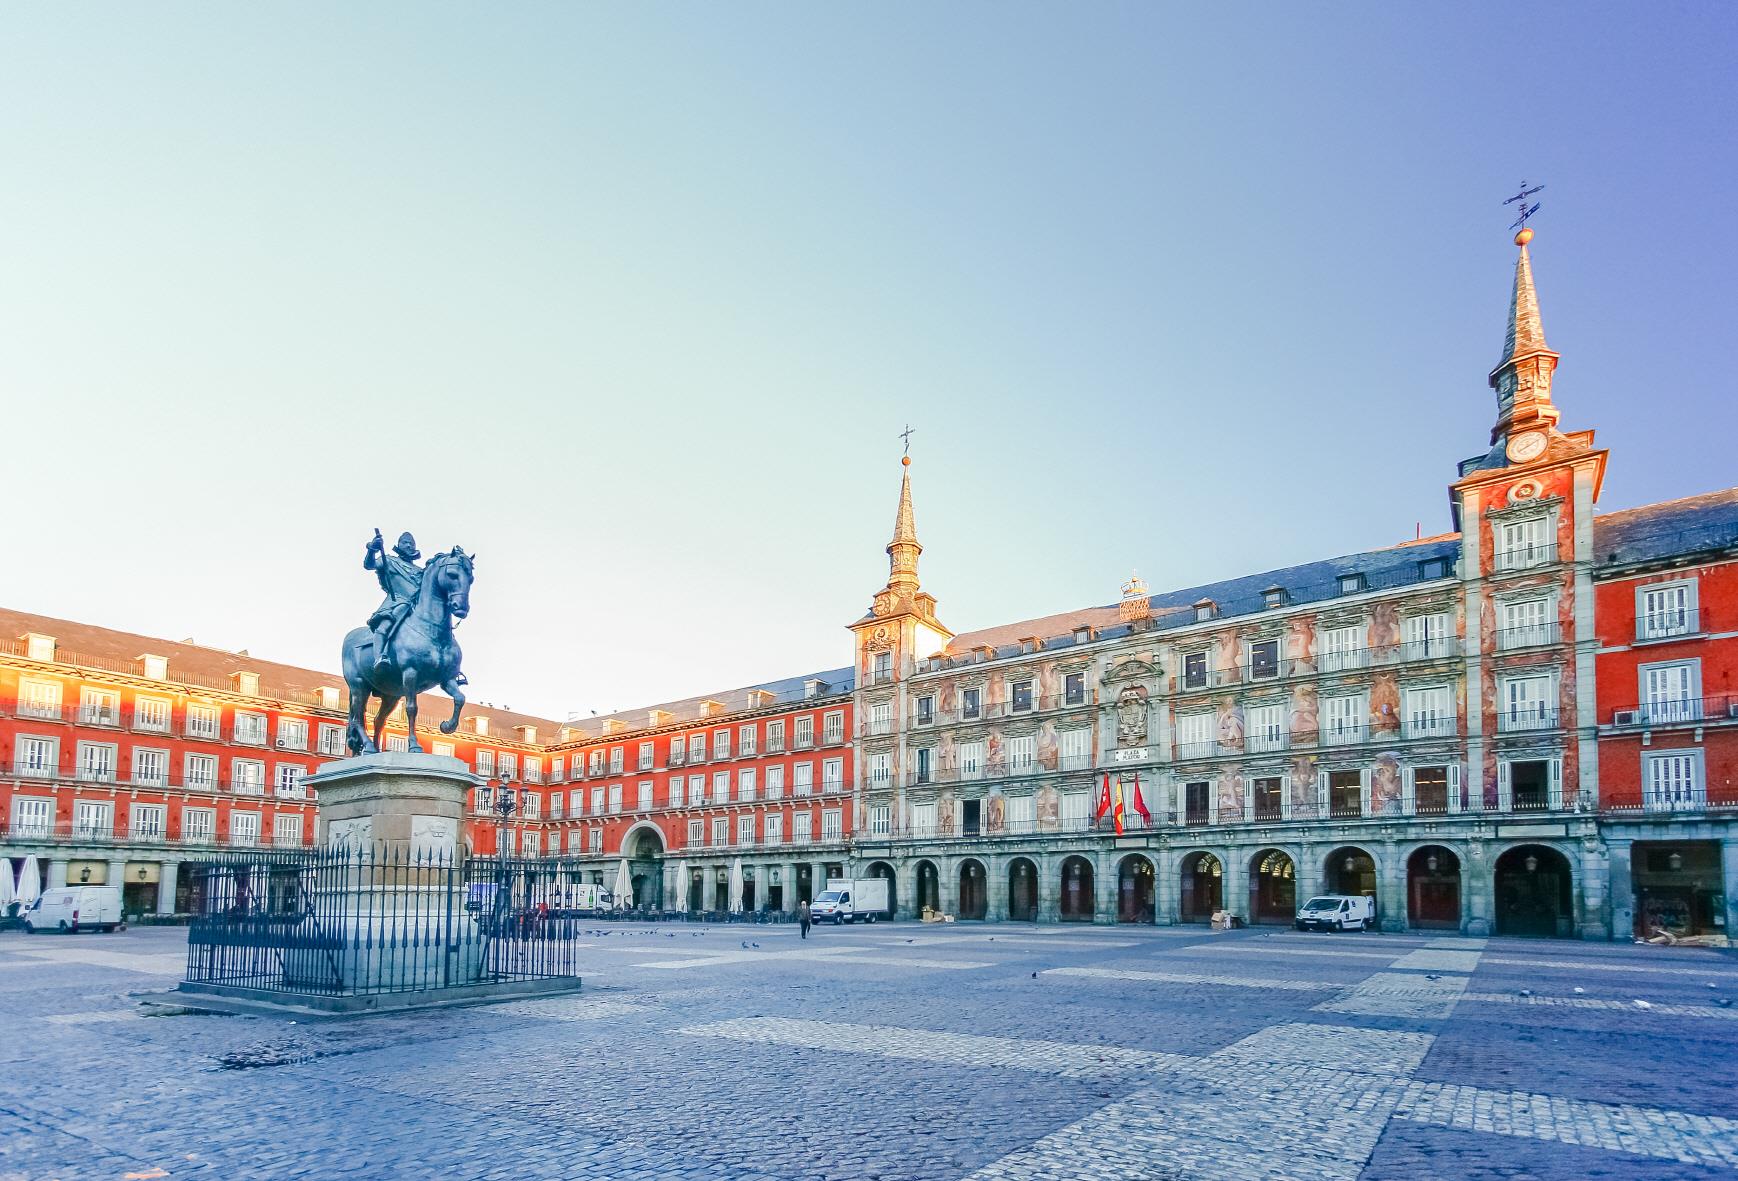 마드리드 마요르 광장  (Plaza Mayor de Madrid)